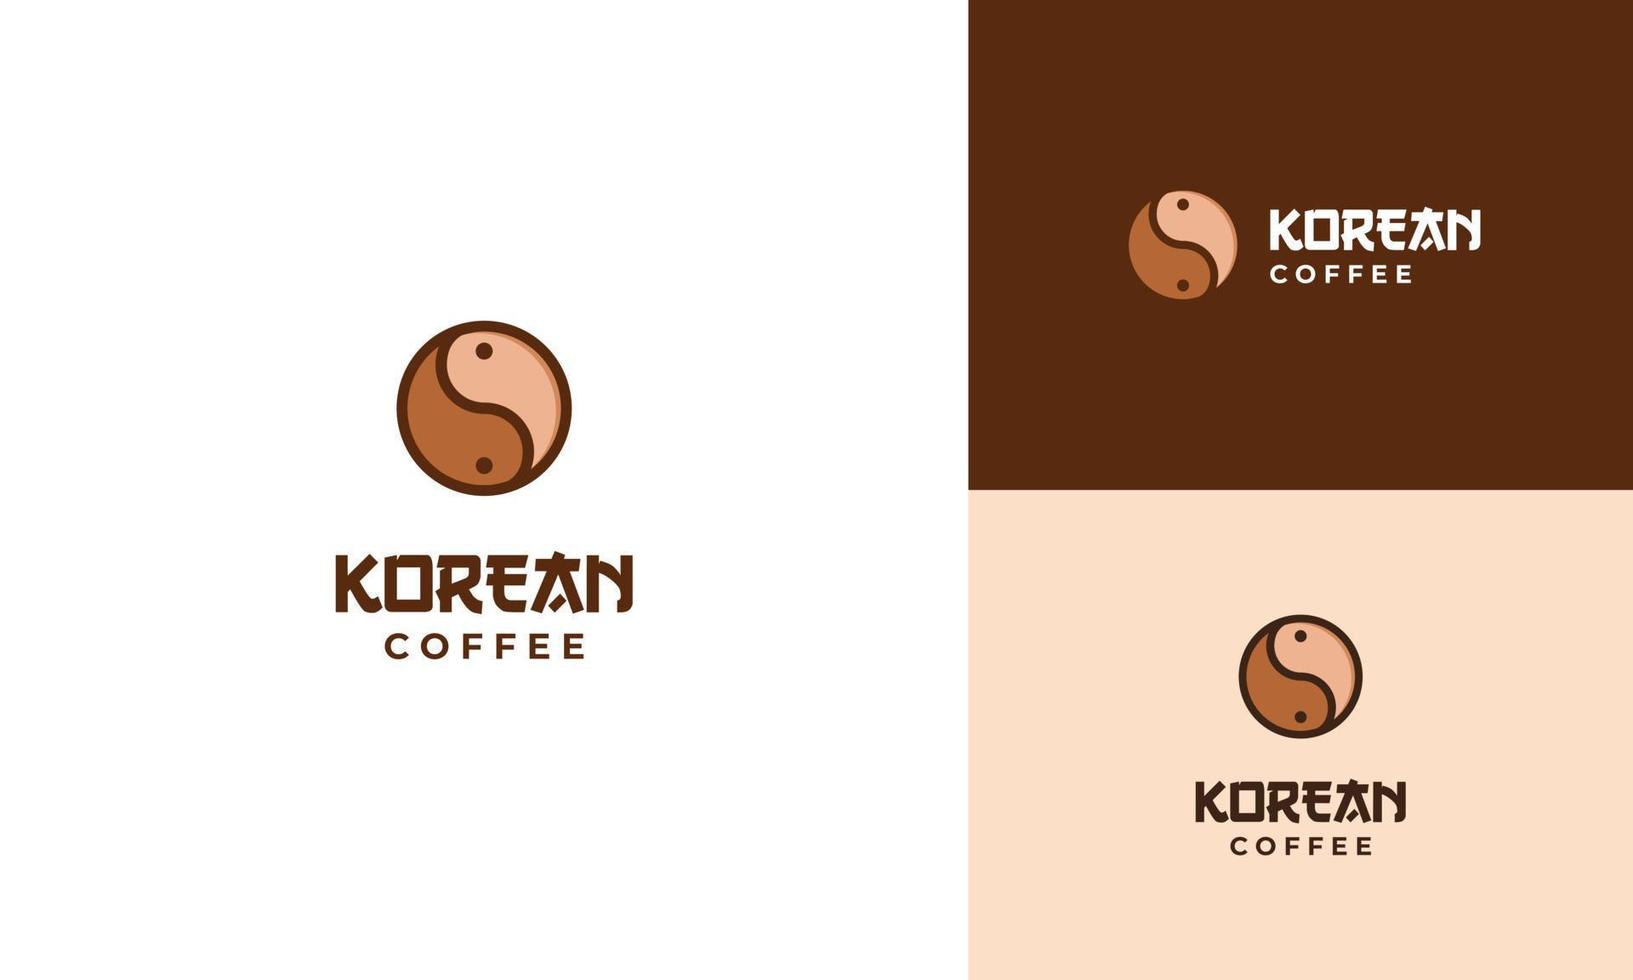 vetor de conceito de design de logotipo de café coreano